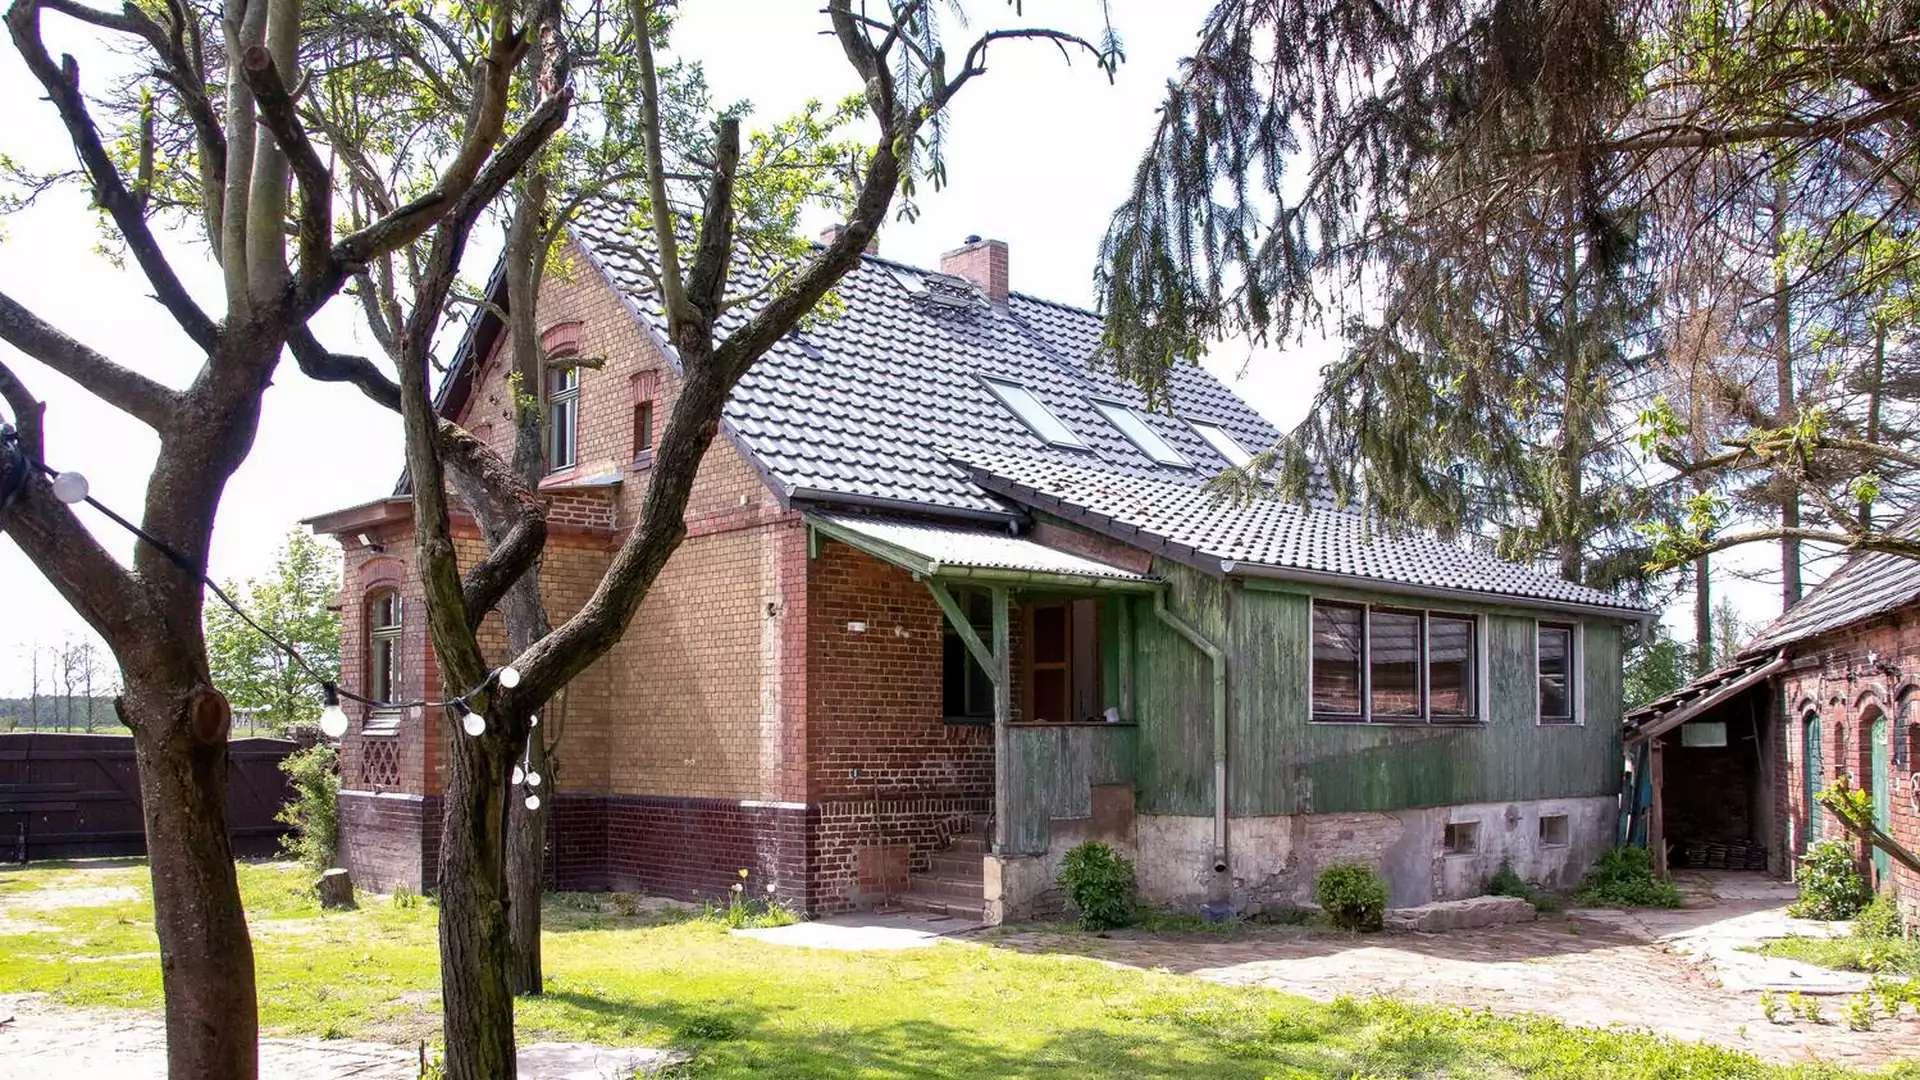 Remont domu, który ma ponad 100 lat. Wnętrze zachowało klimat